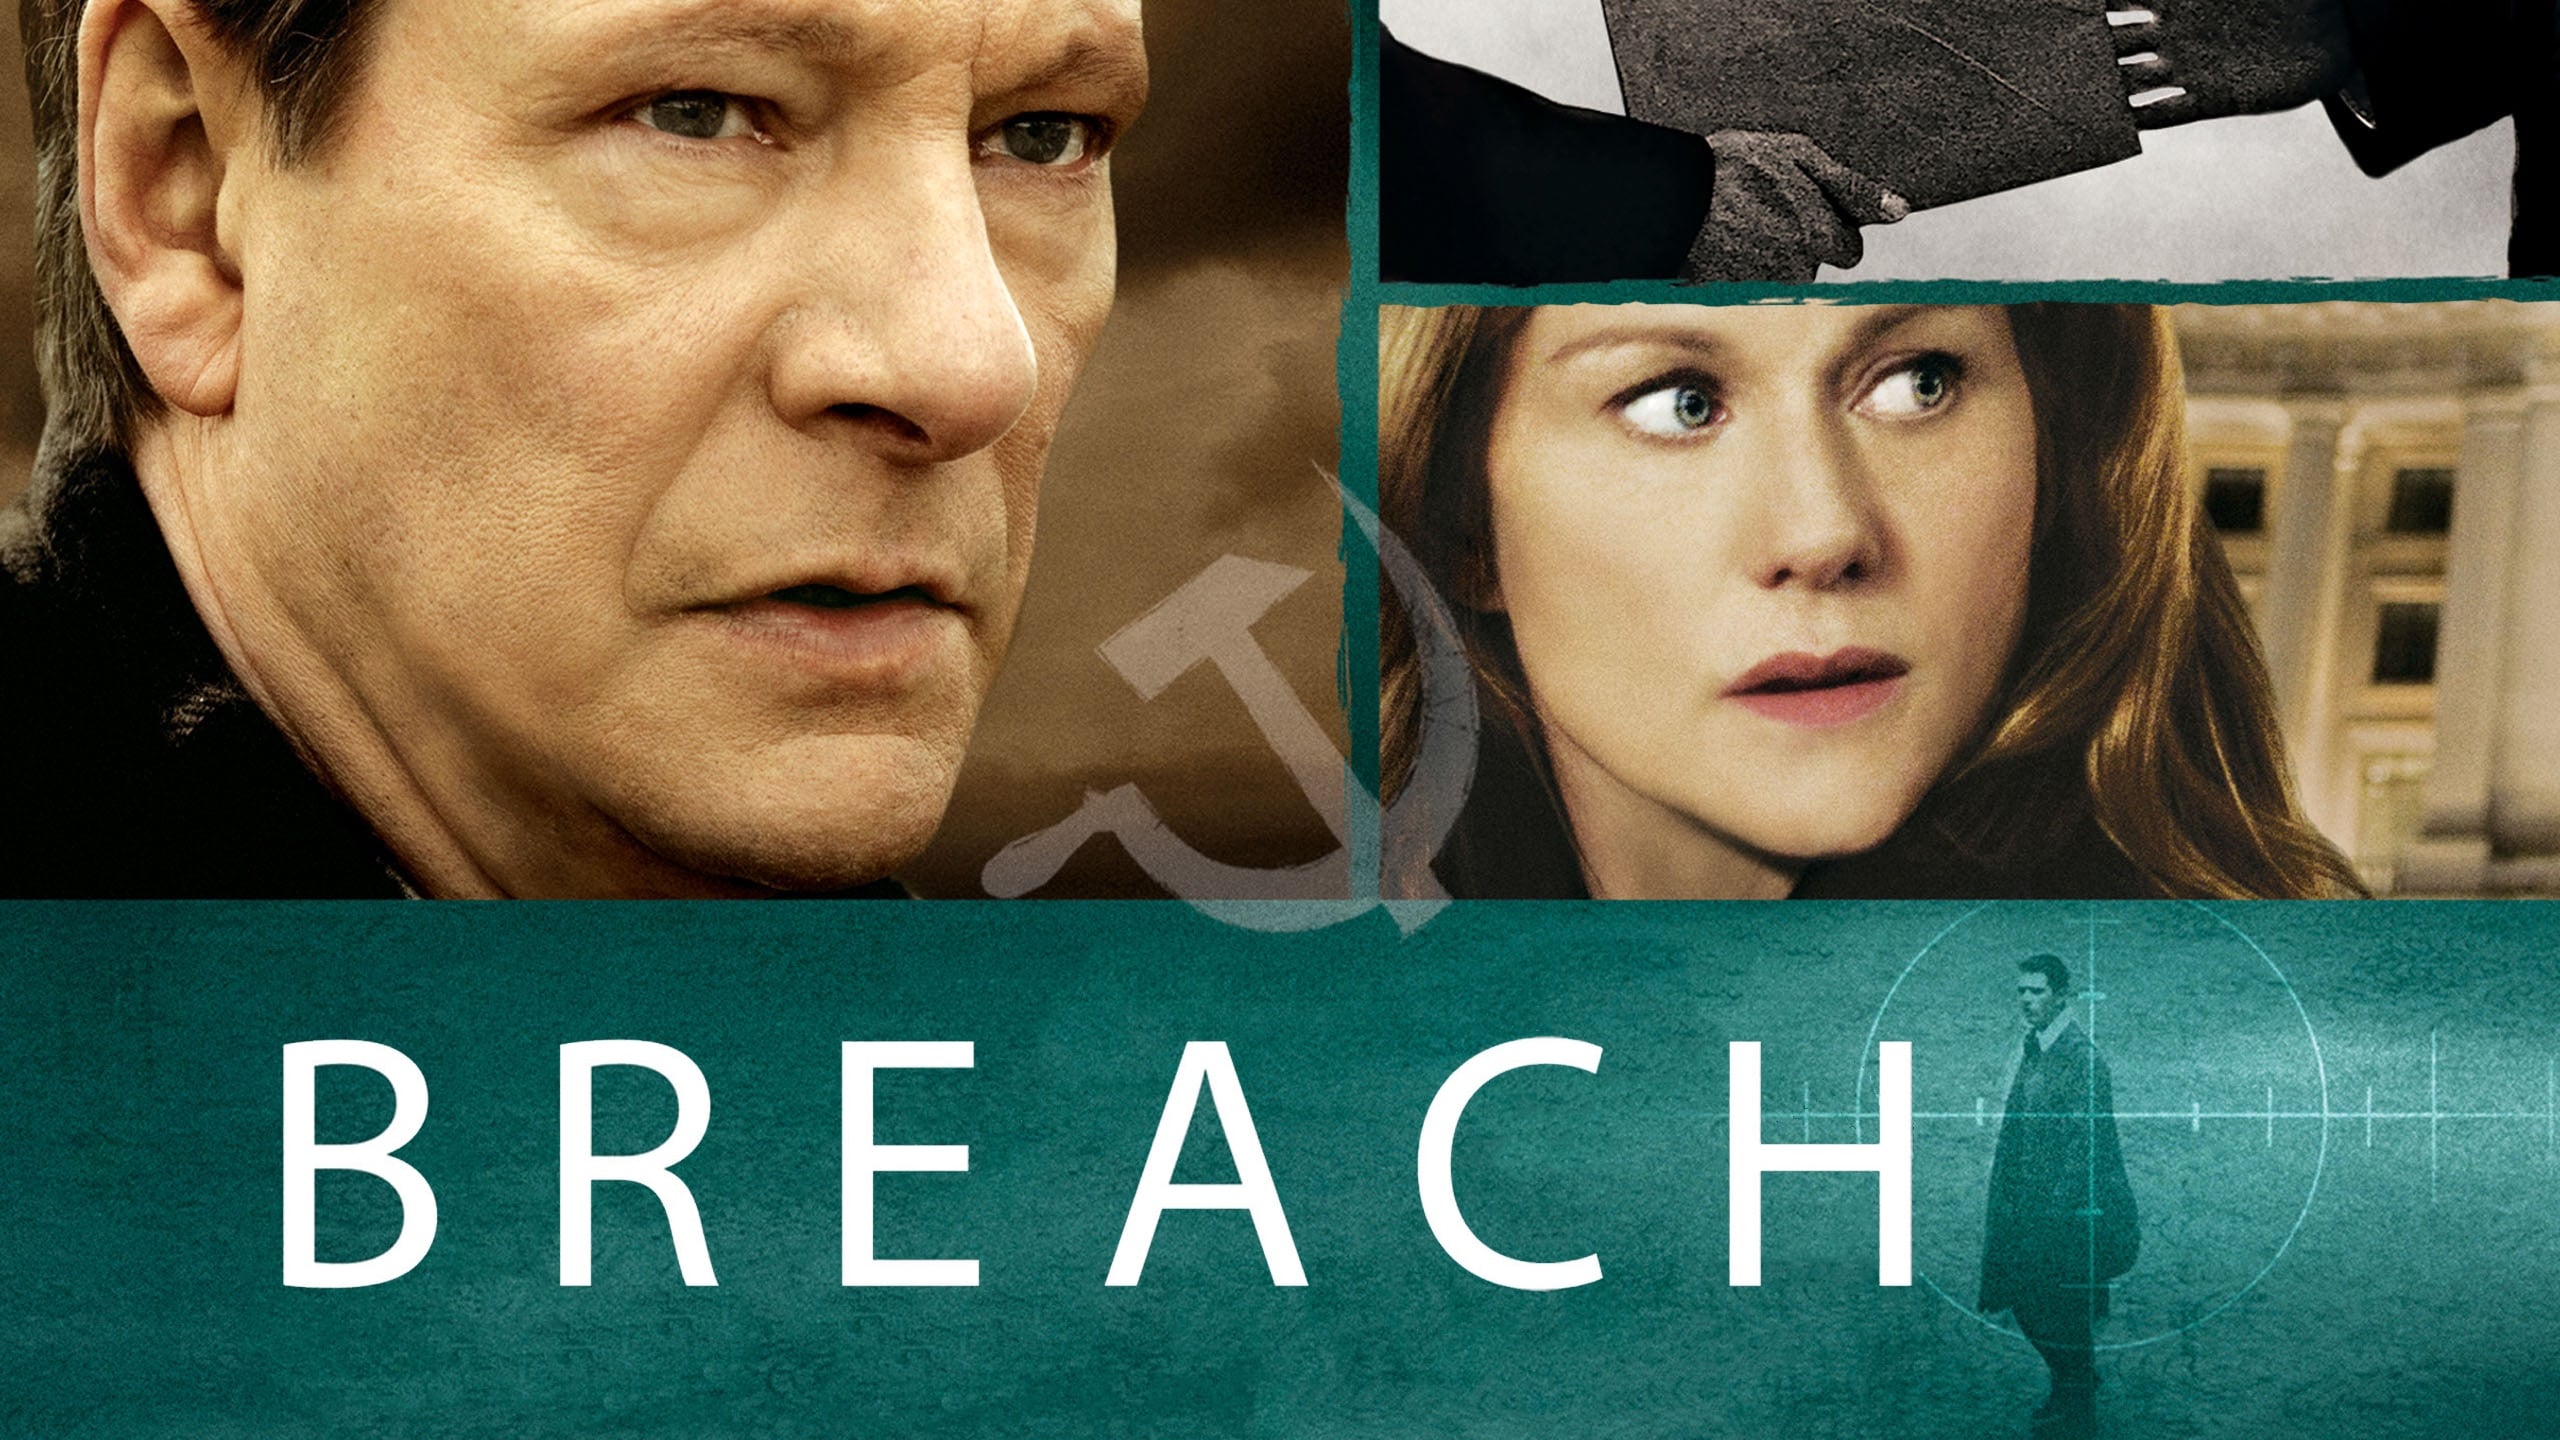 Breach (2007)